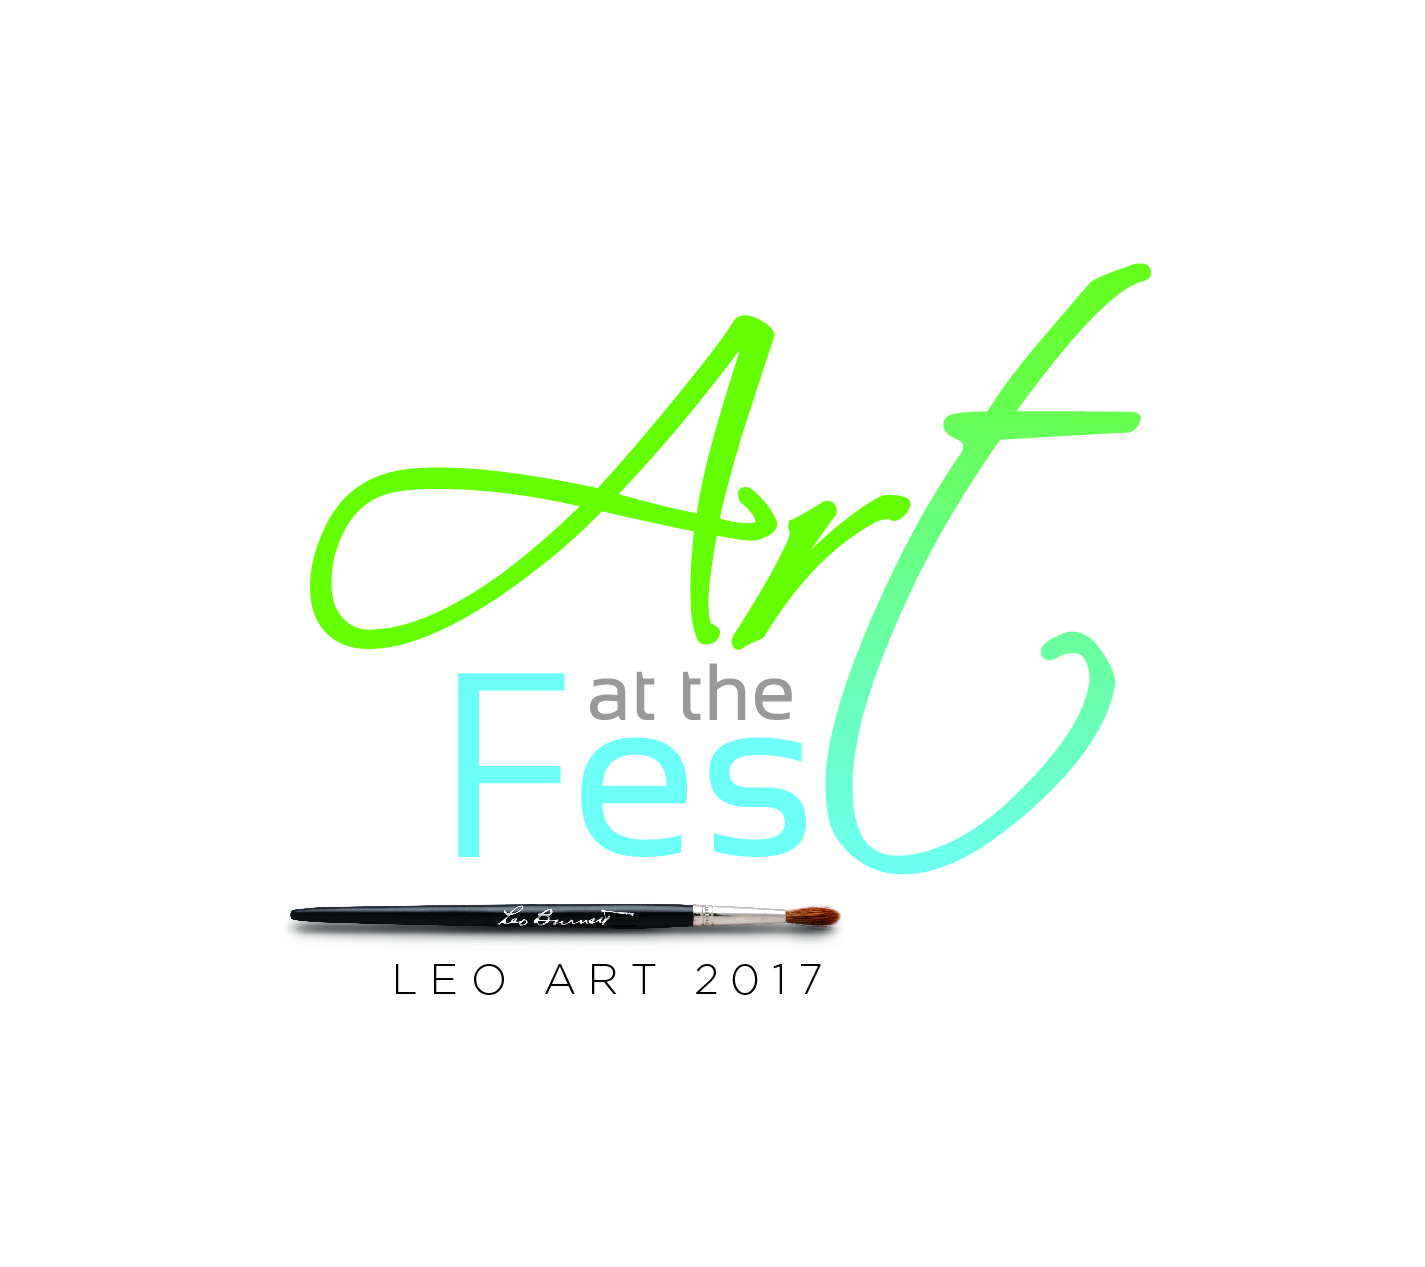 Leo Art 2017 Art at the Fest